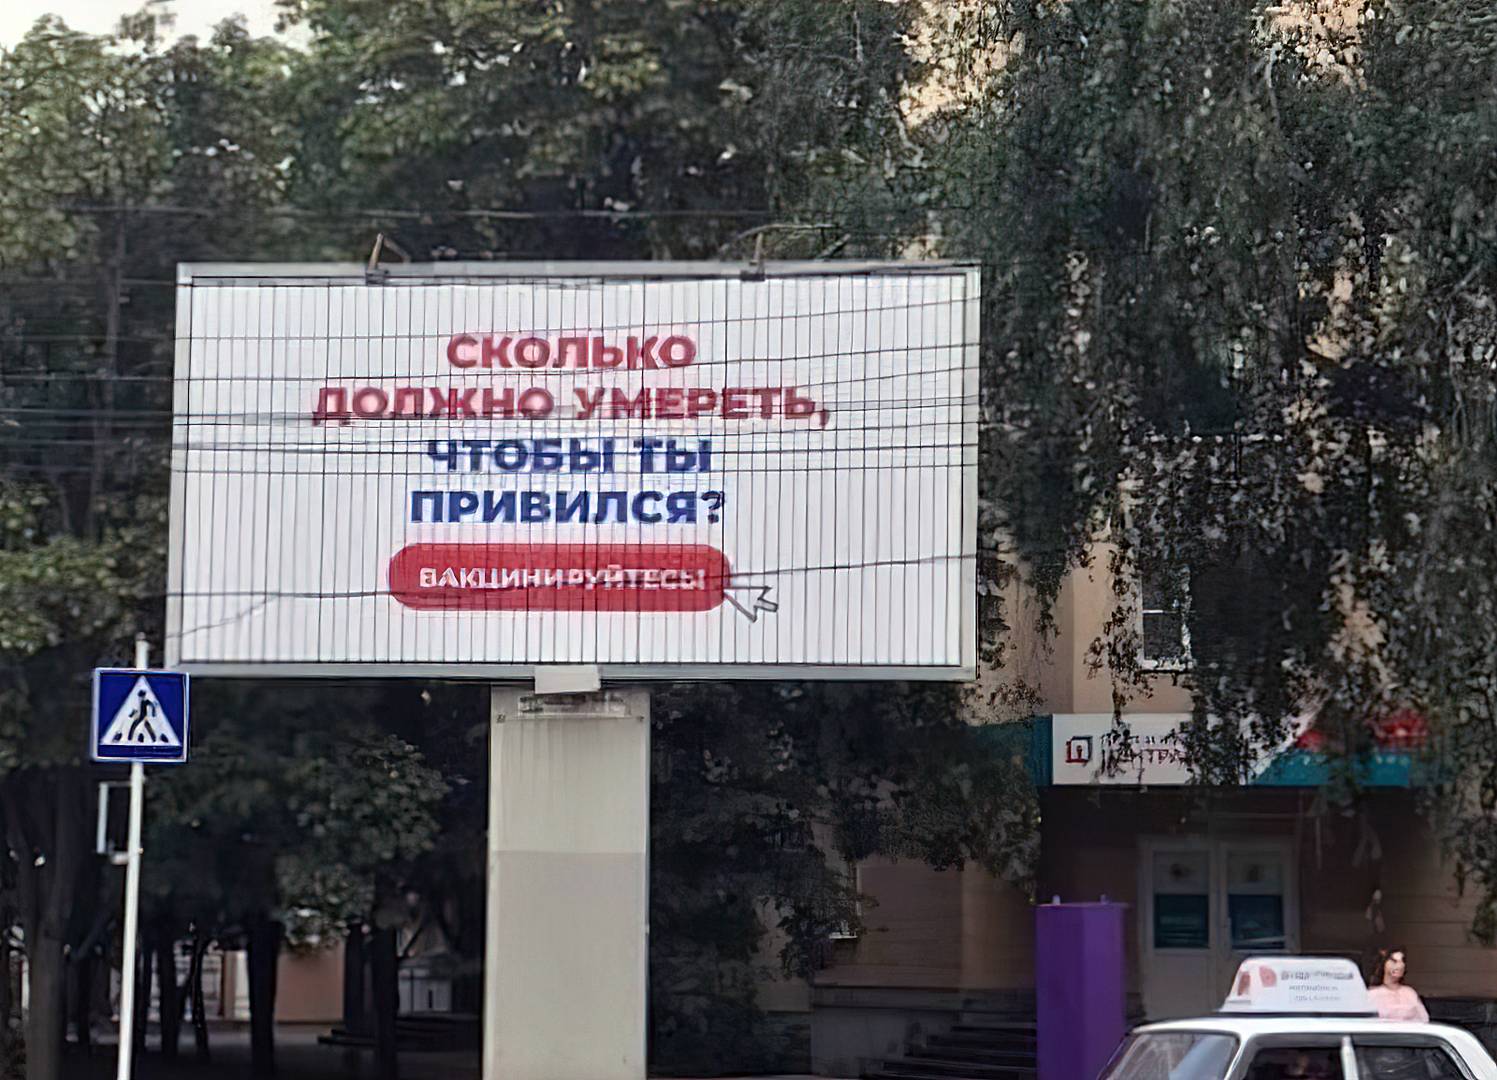 Социальная реклама в российских городах